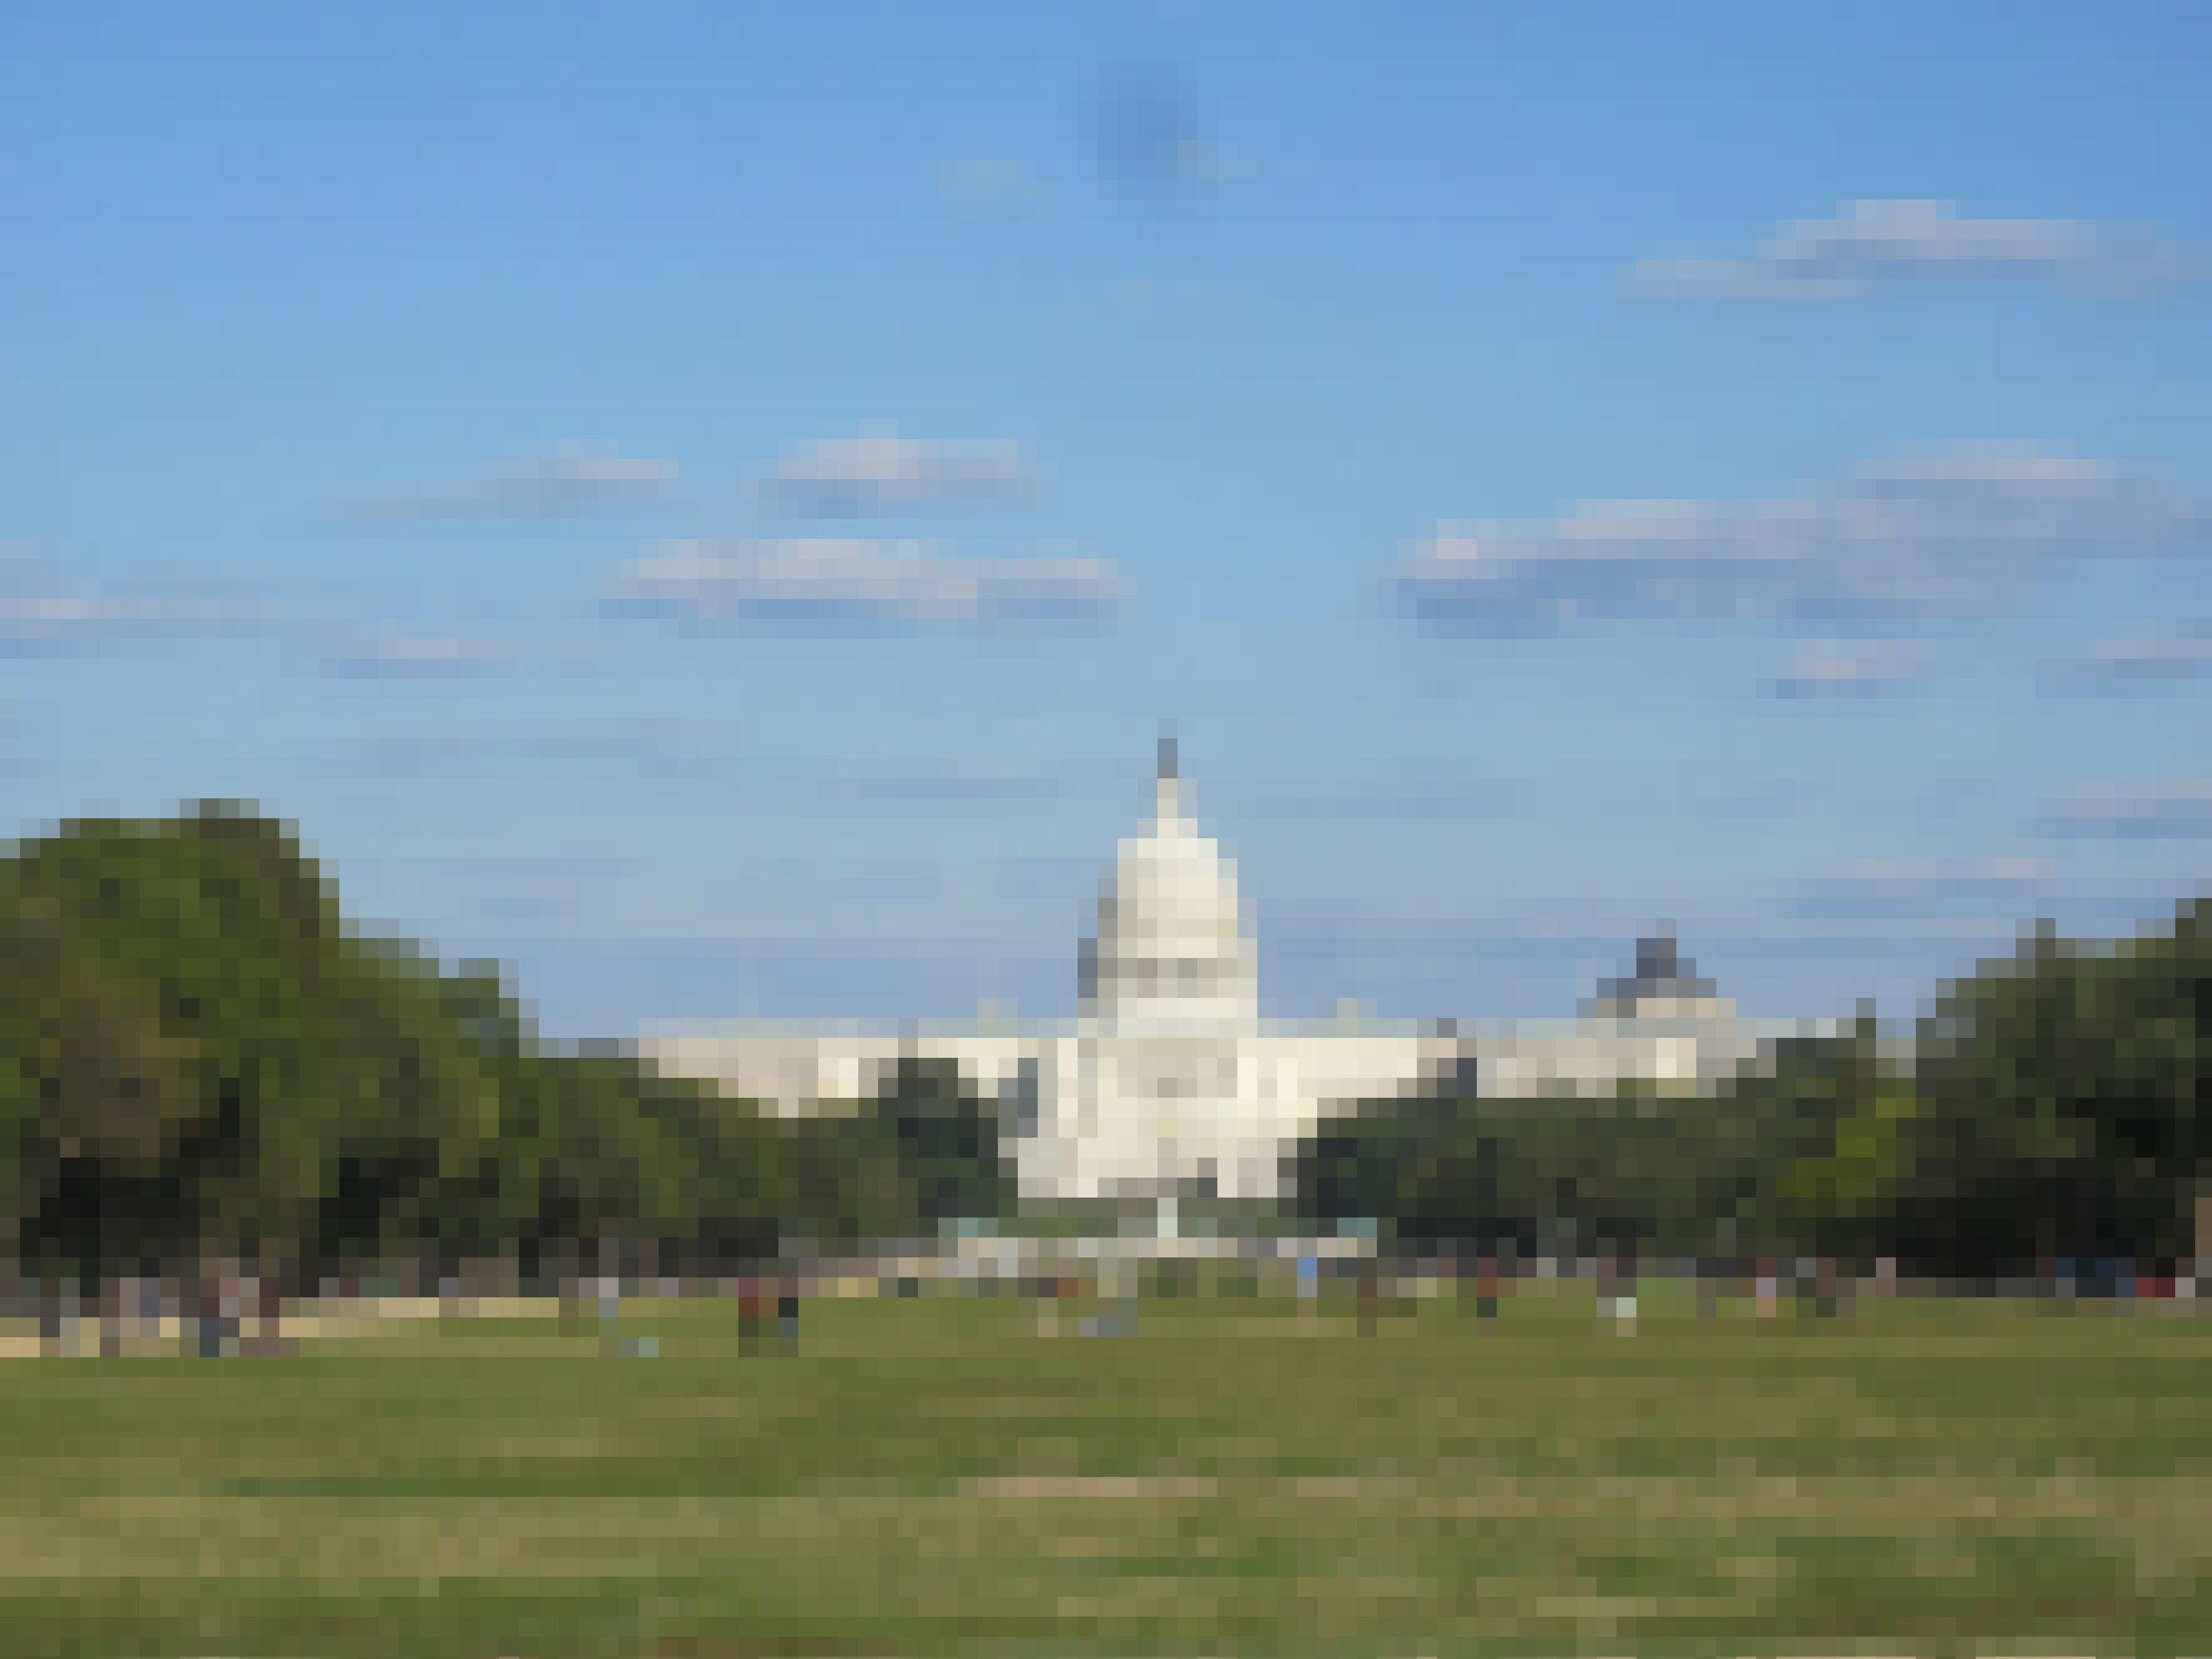 Das Kapitol in Washington, D.C. Im Vordergrund halten sich Menschen auf dem Rasen auf.